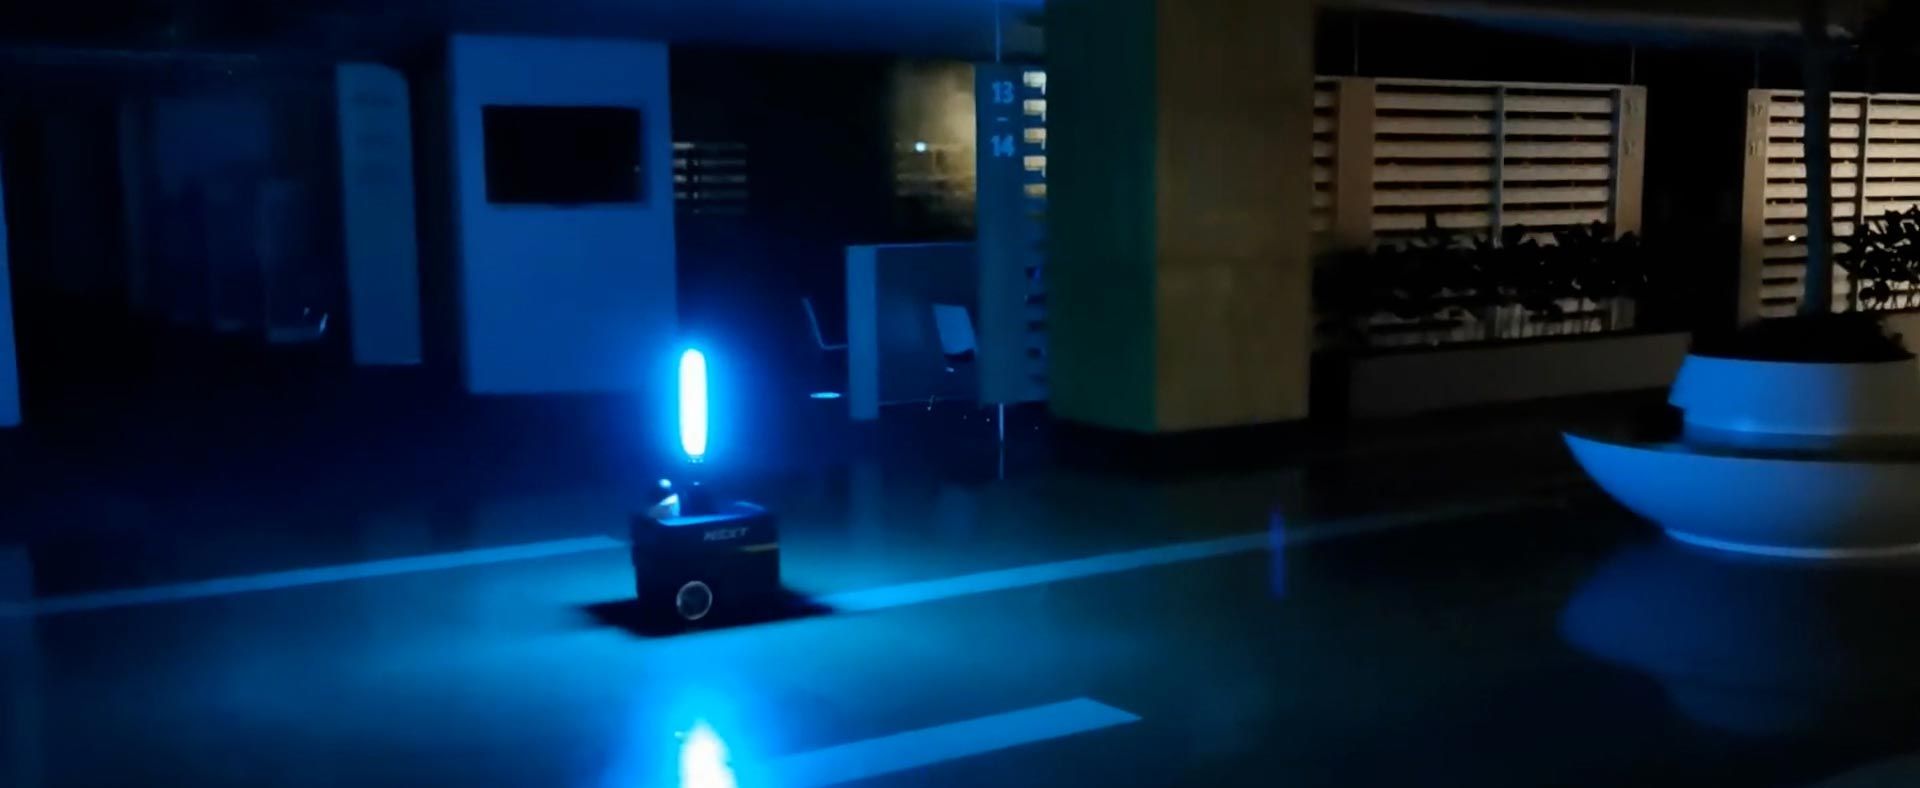 一个装有紫外线灯的自动机器人在商业空间内为建筑内部消毒。